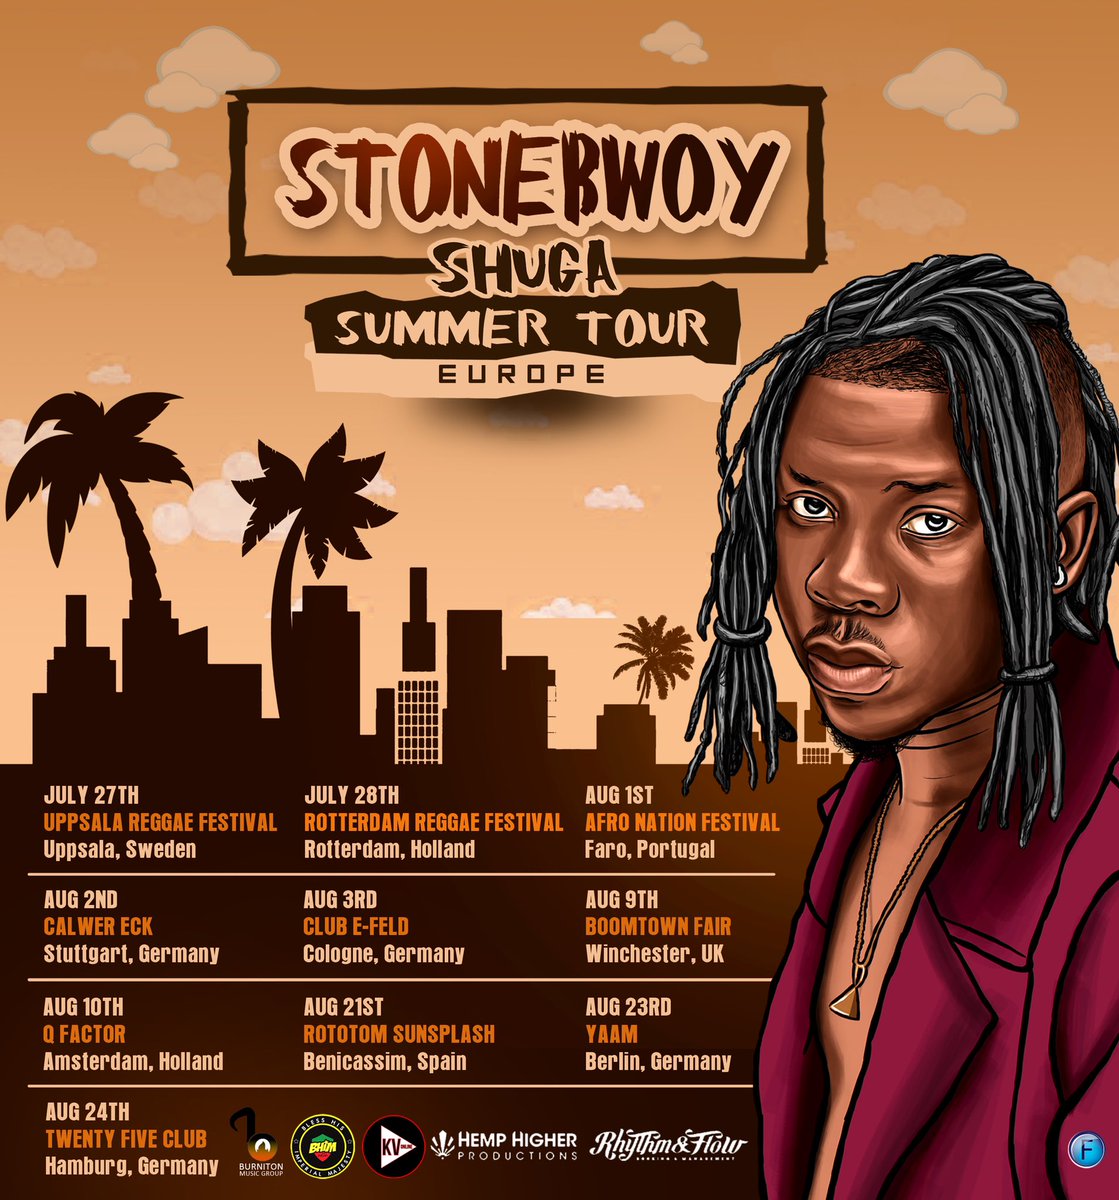 #ShugaEuropeanTour: Stonebwoy announces dates for his Europe tour